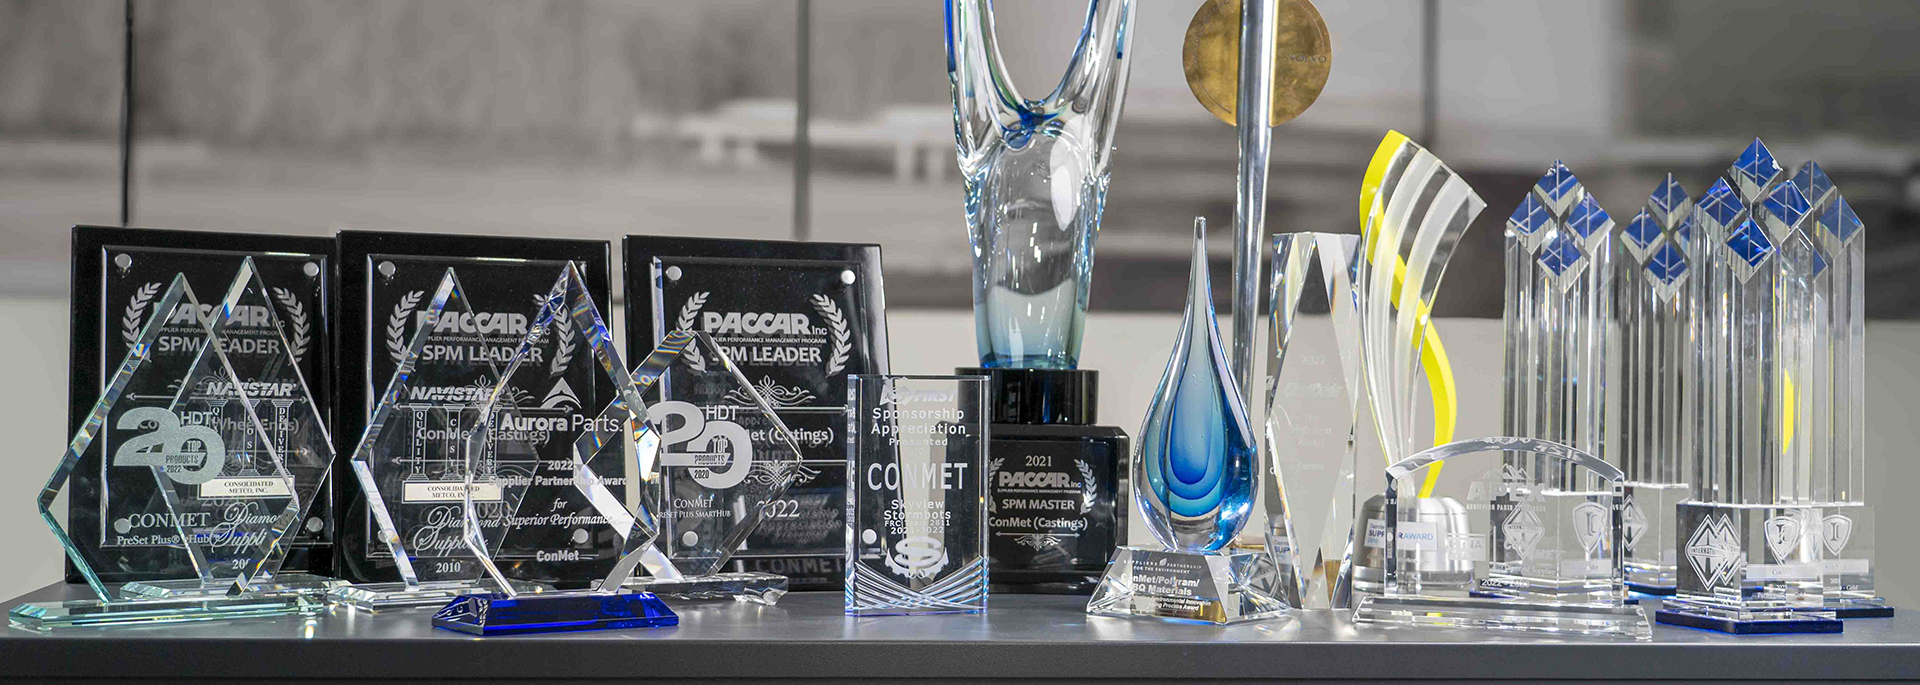 Mostrador lleno de premios de la industria por los productos y la calidad de ConMet